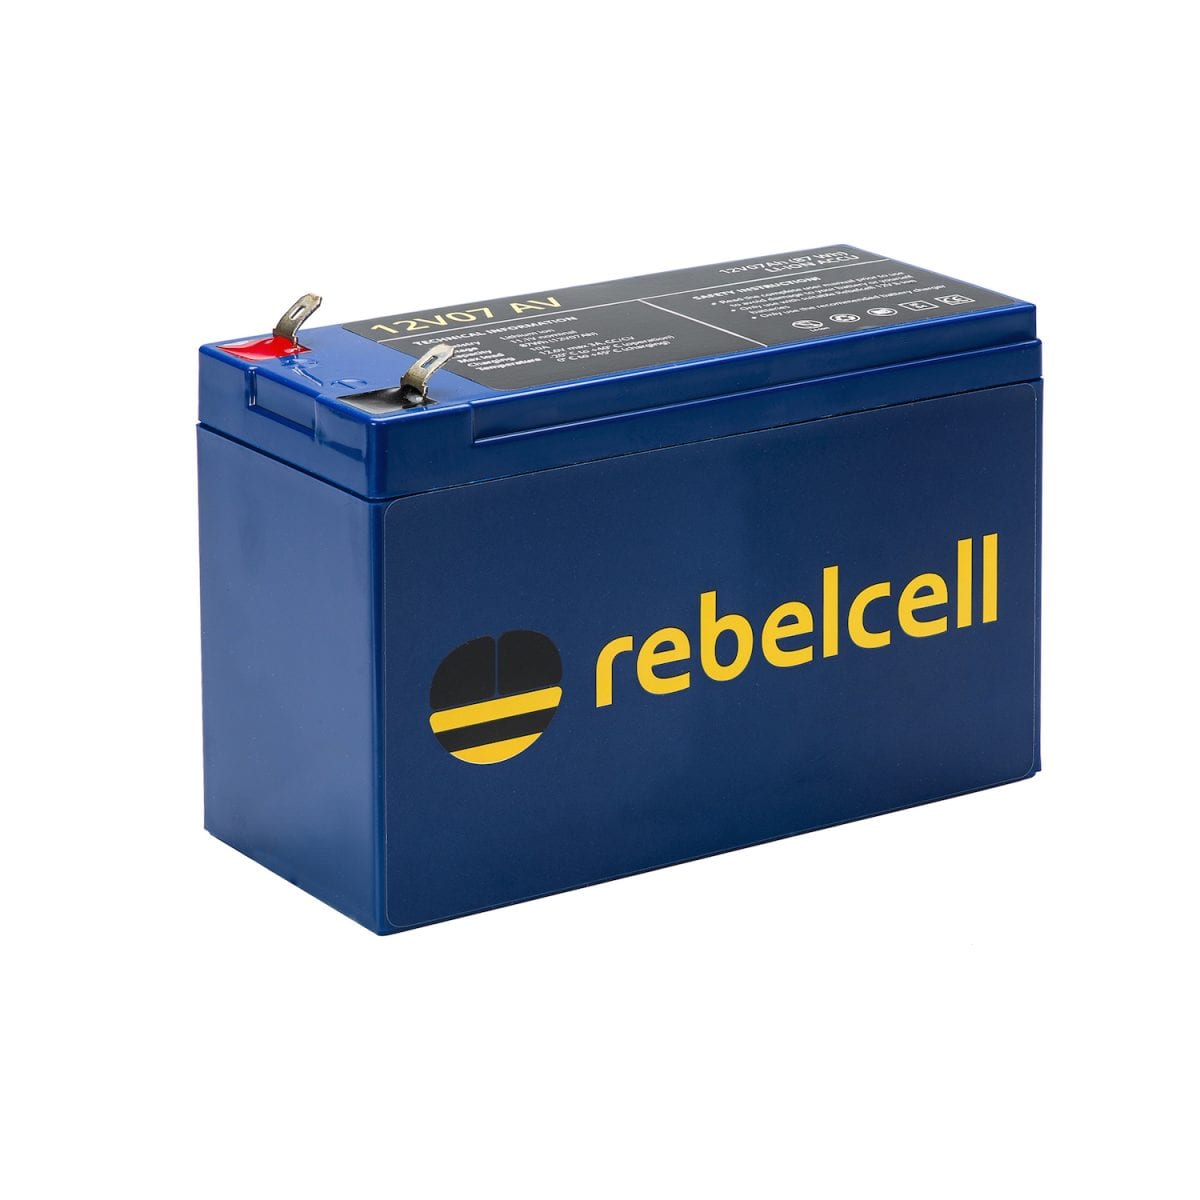 Rebelcel 12V07 AV product image